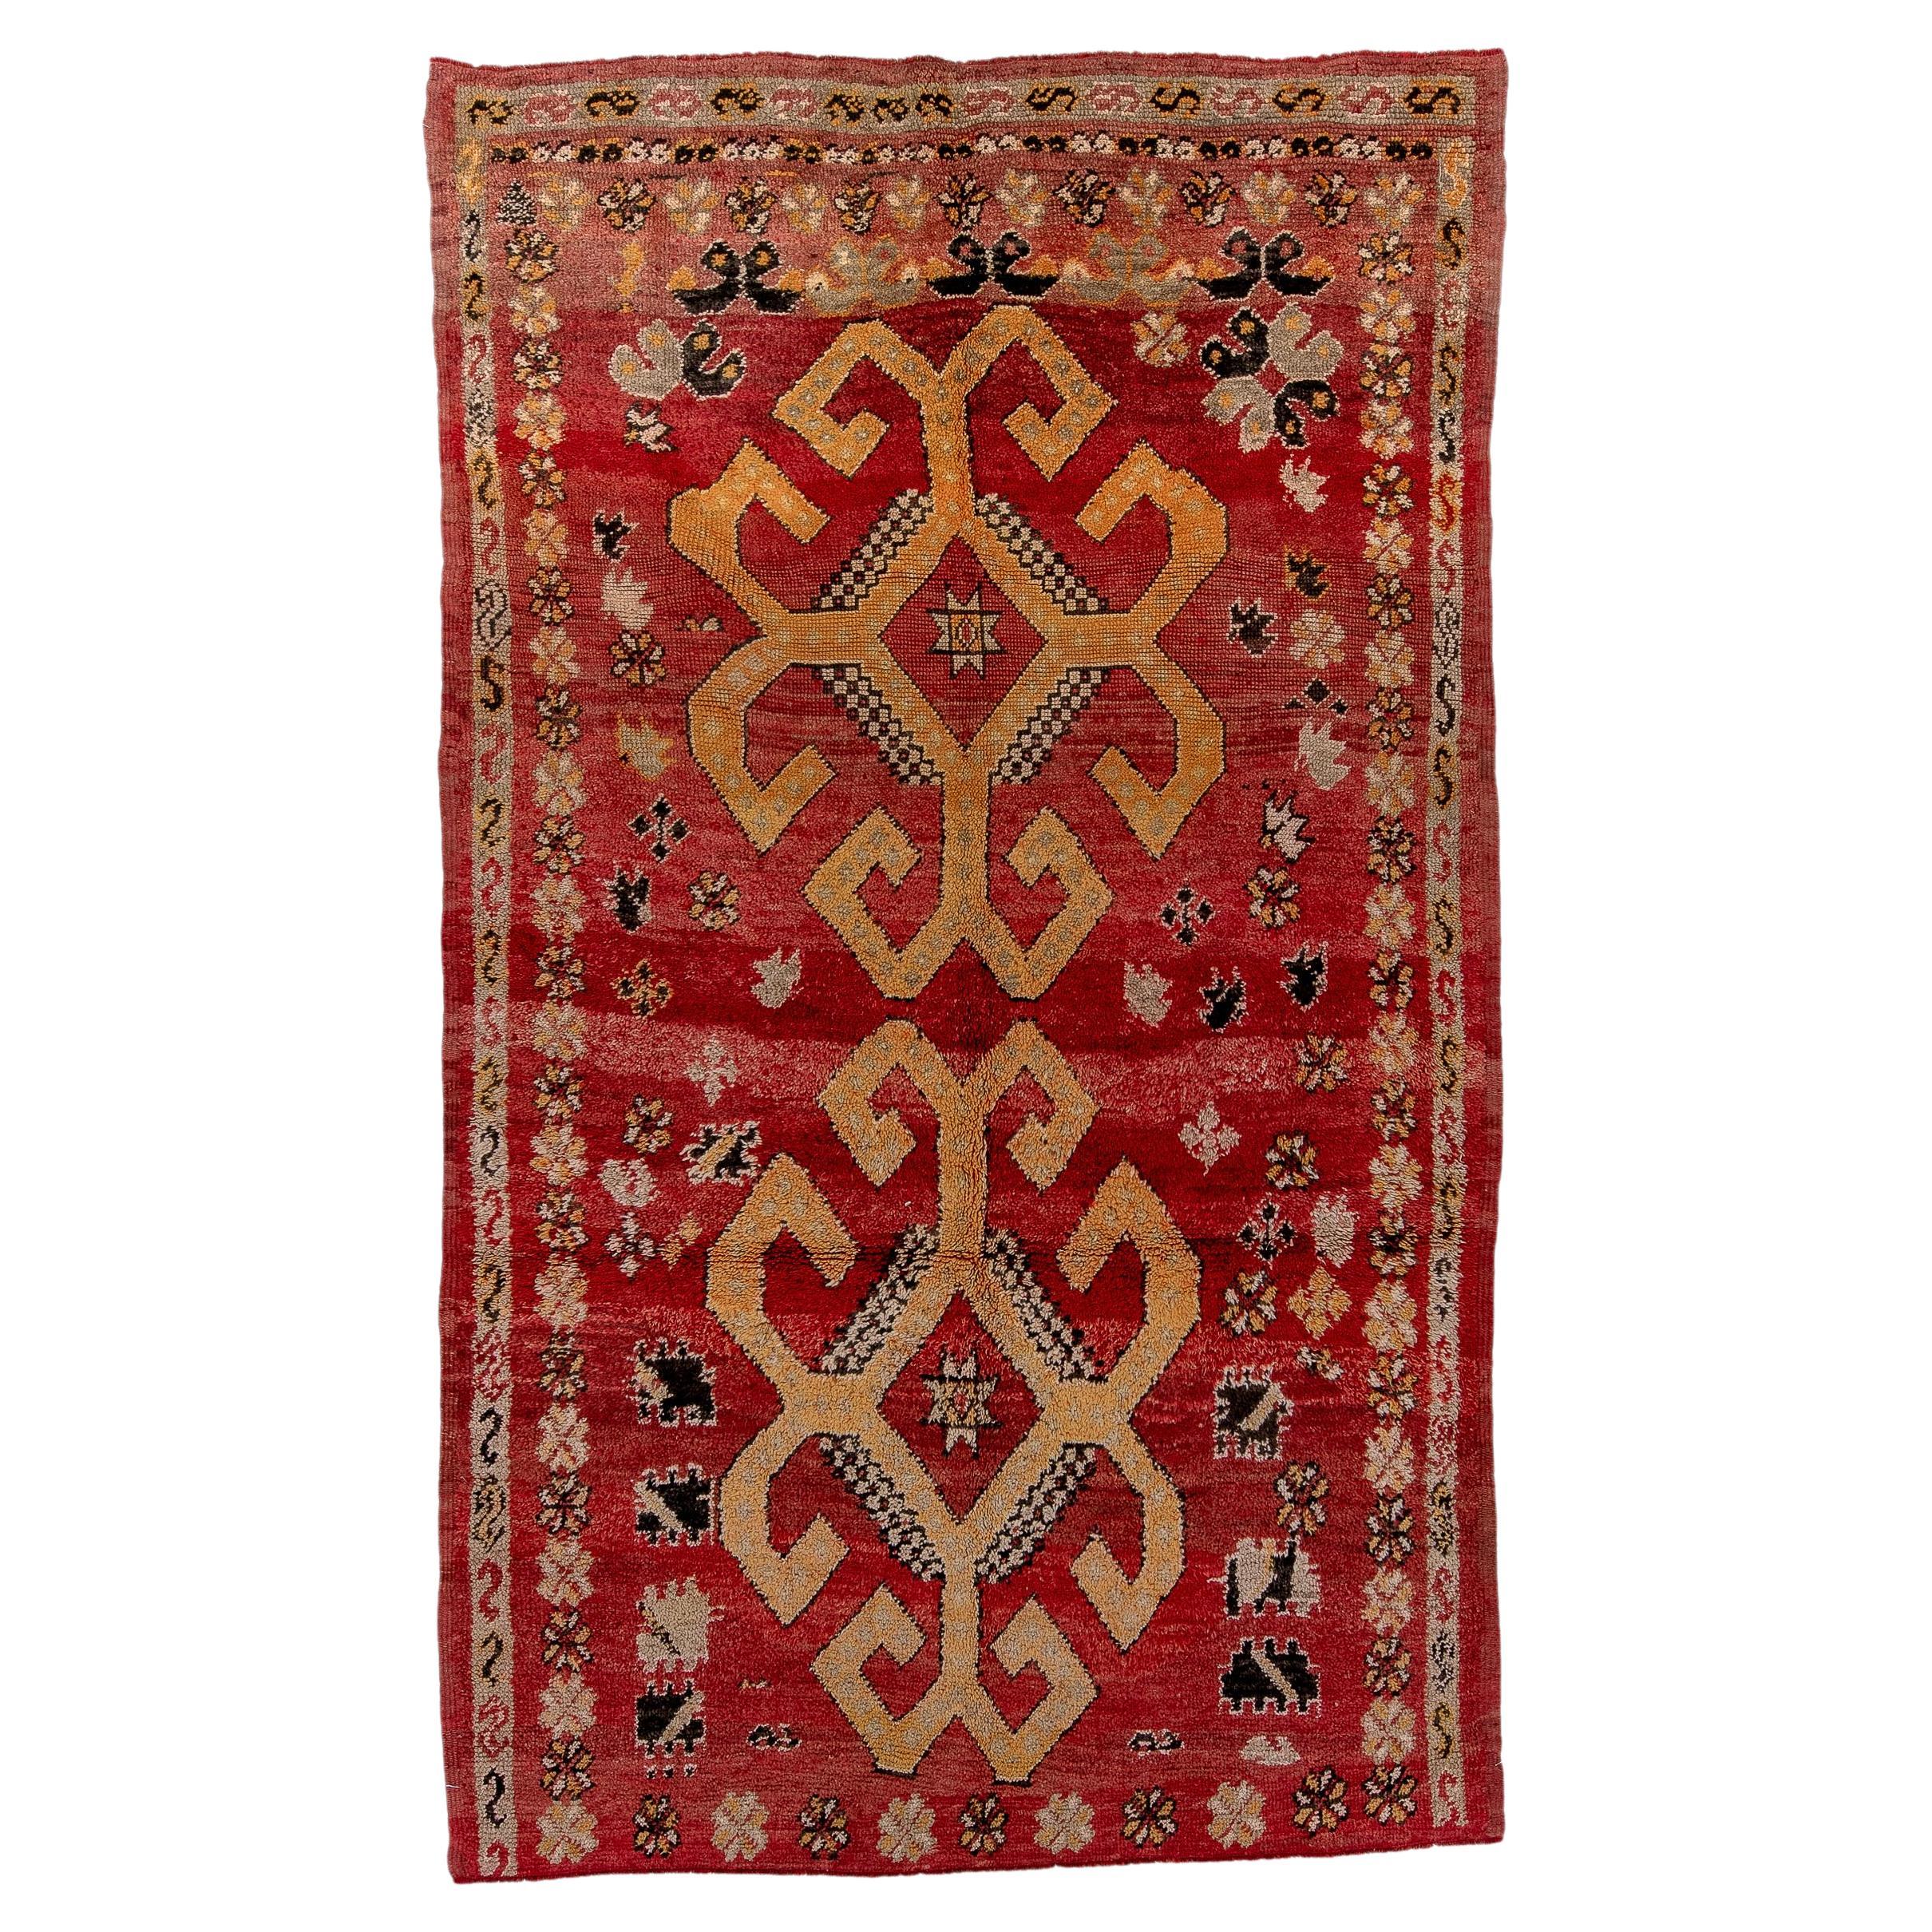 Marokkanischer Medaillon-Teppich mit doppeltem Medaillon und floralen geometrischen Motiven - Tiefroter Altgold